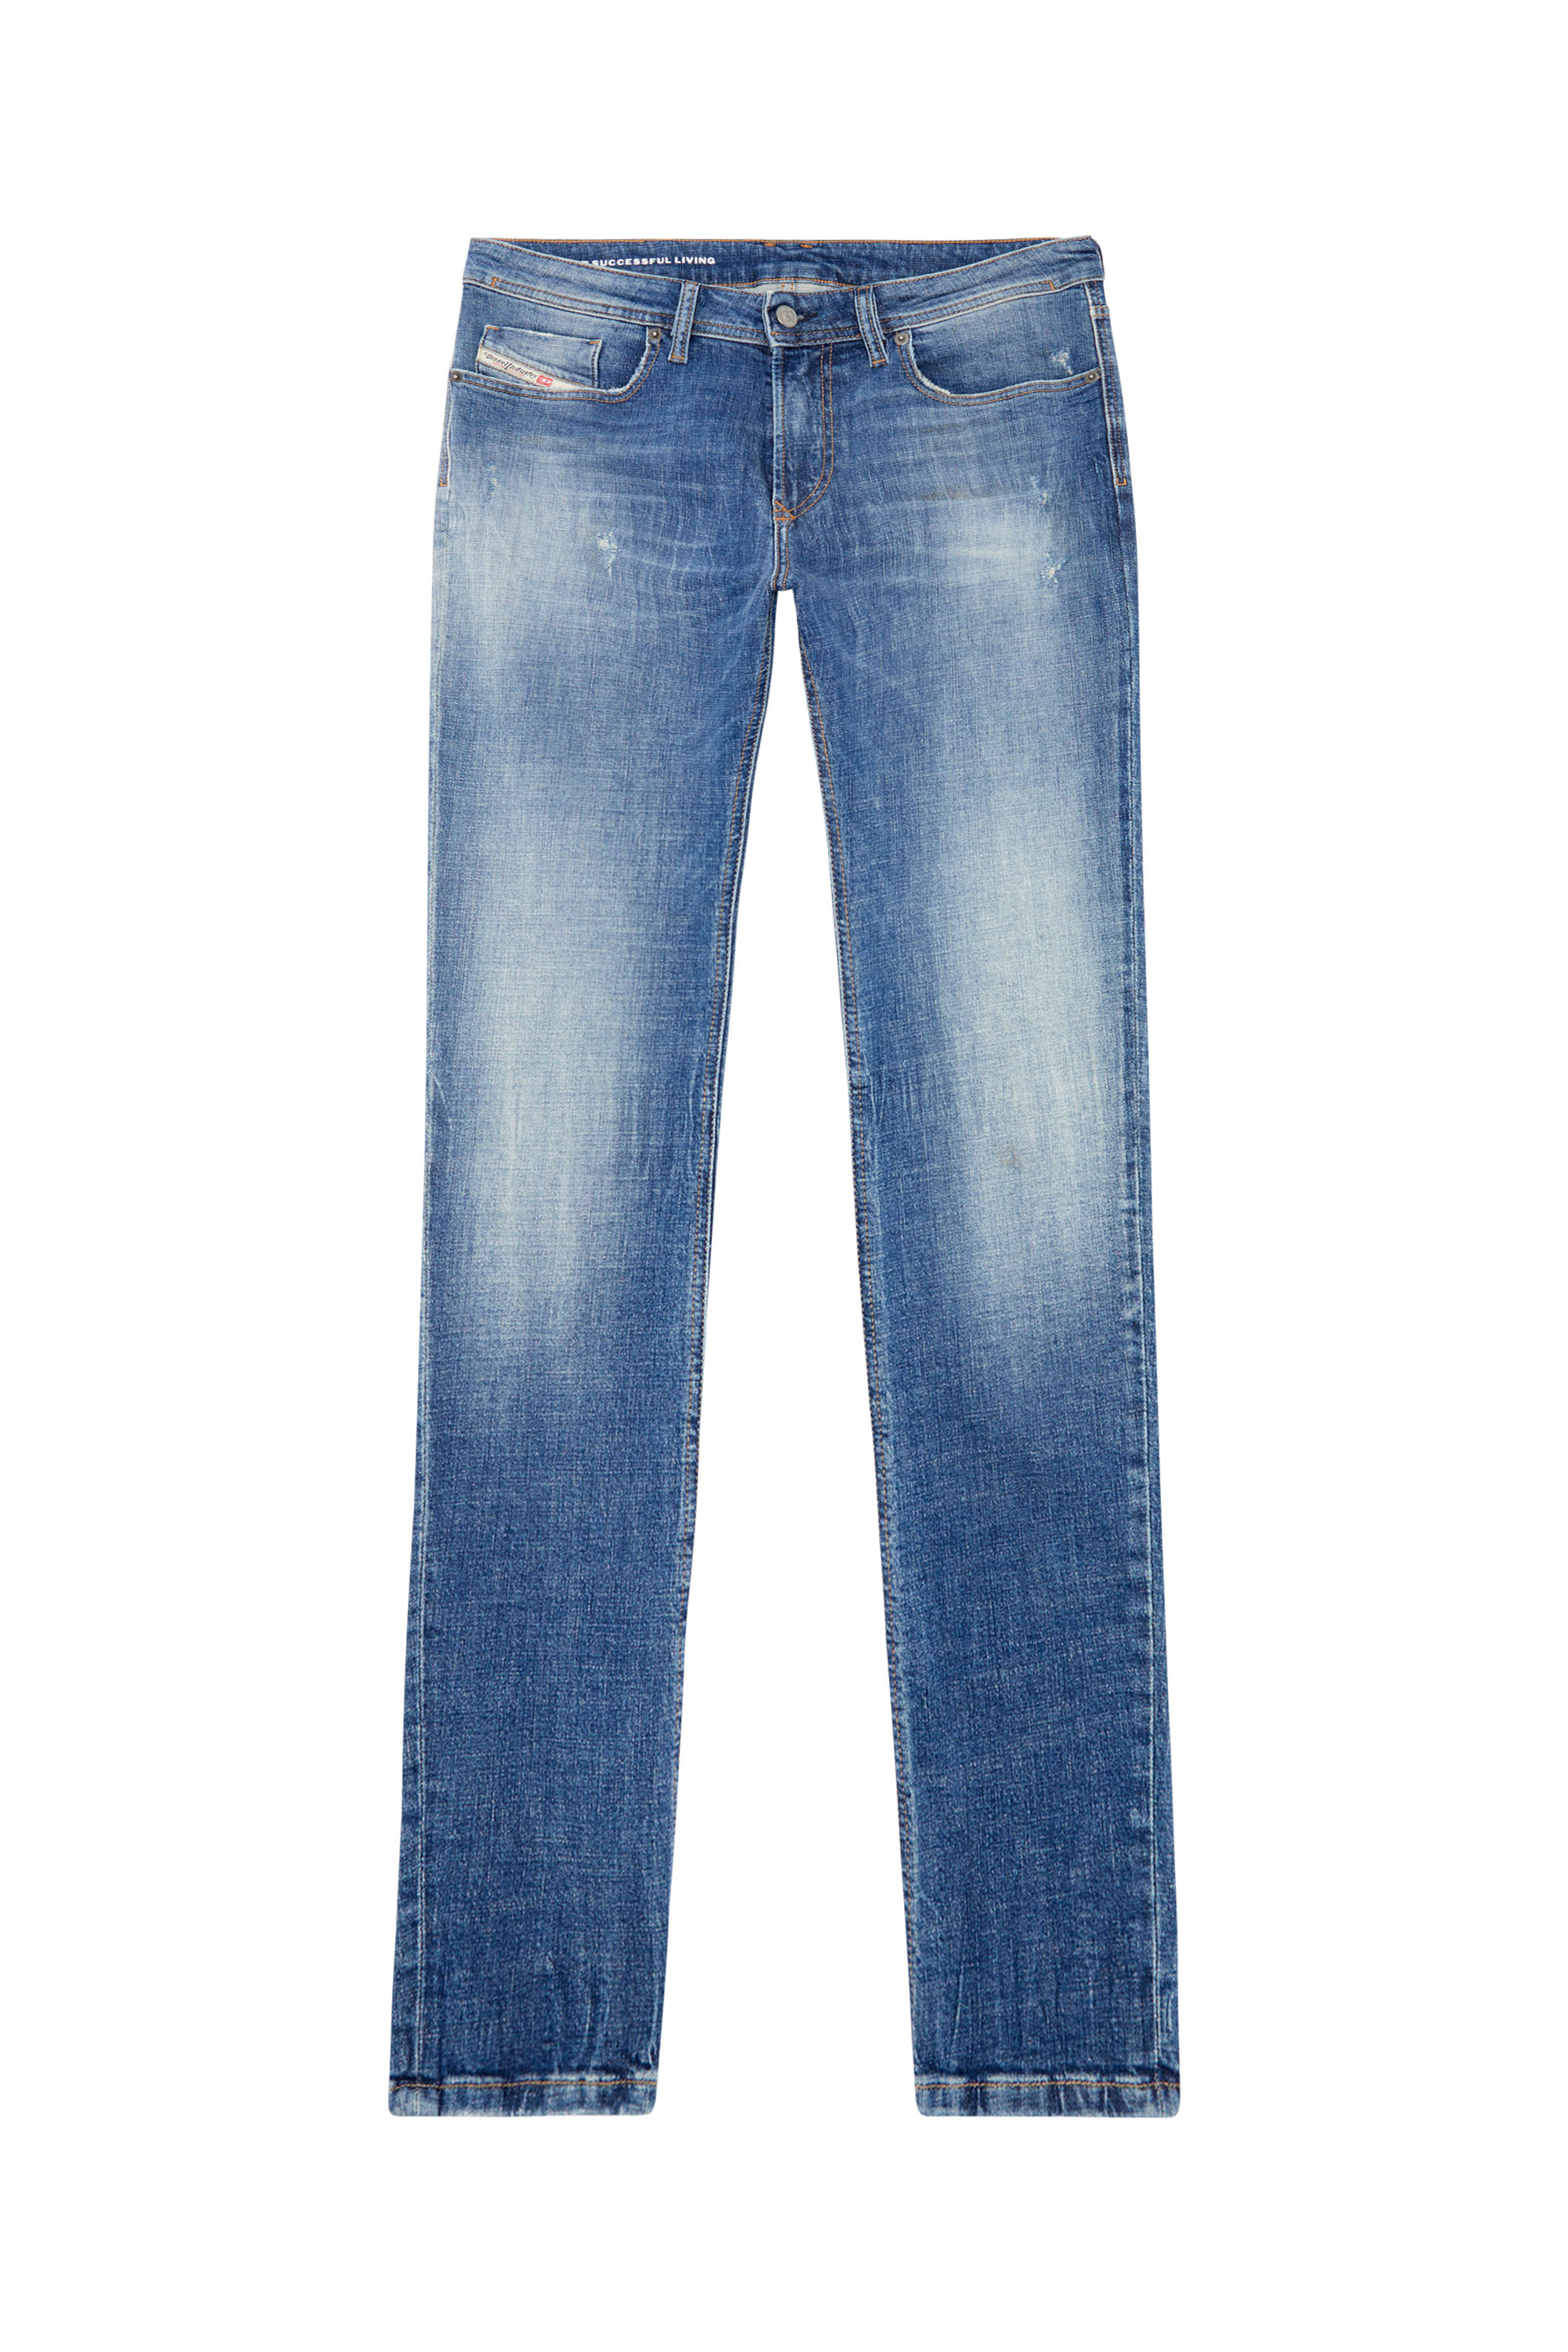 Diesel - Skinny Jeans 1979 Sleenker 0GRDF, Medium blue - Image 5